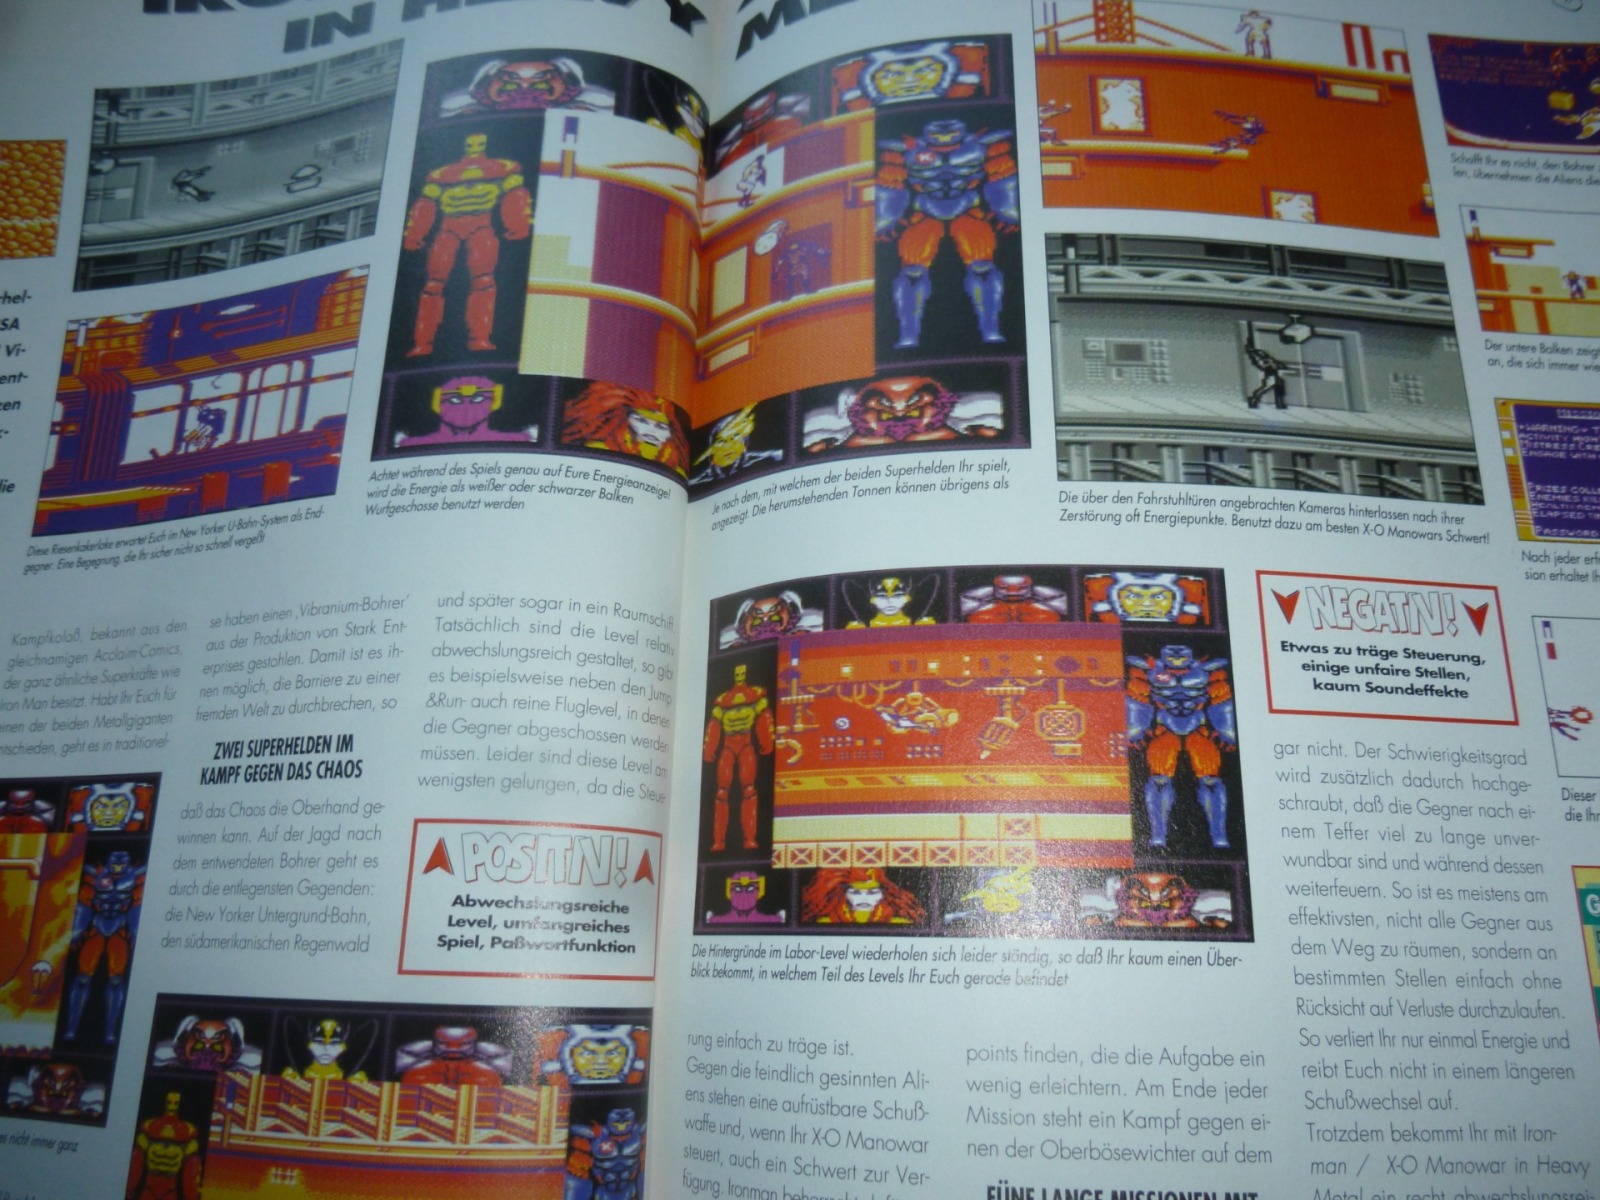 TOTAL Das unabhängige Magazin - 100% Nintendo - Ausgabe 10/96 1996 20